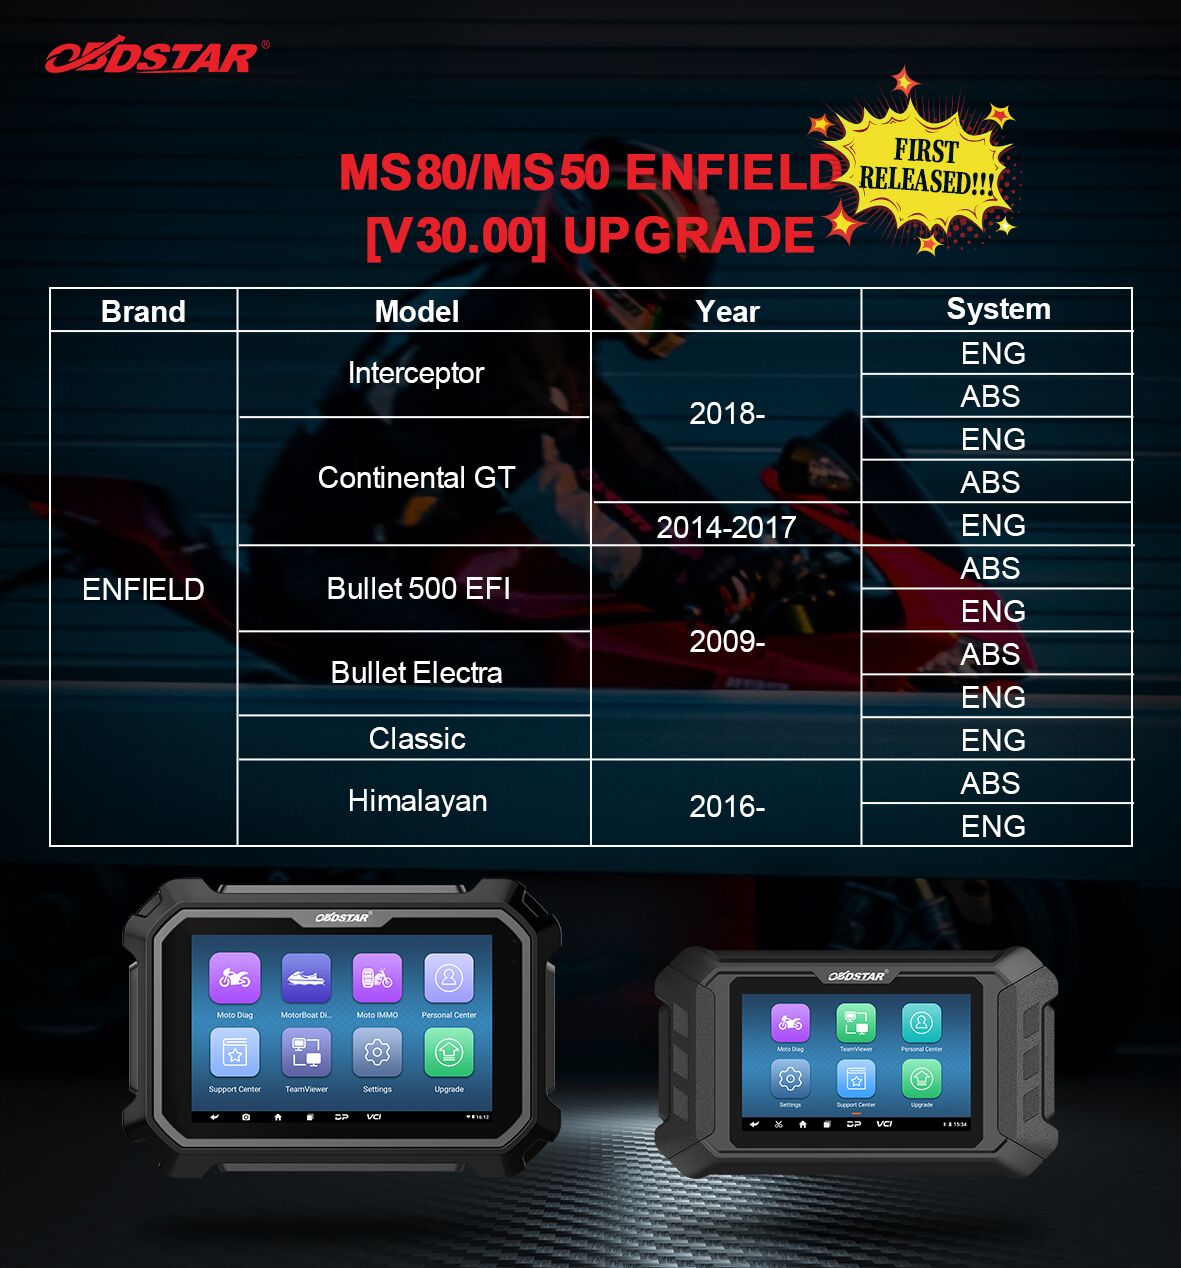 OBDSTAR MS80/MS50 ENFIELD V30.00 Upgrade